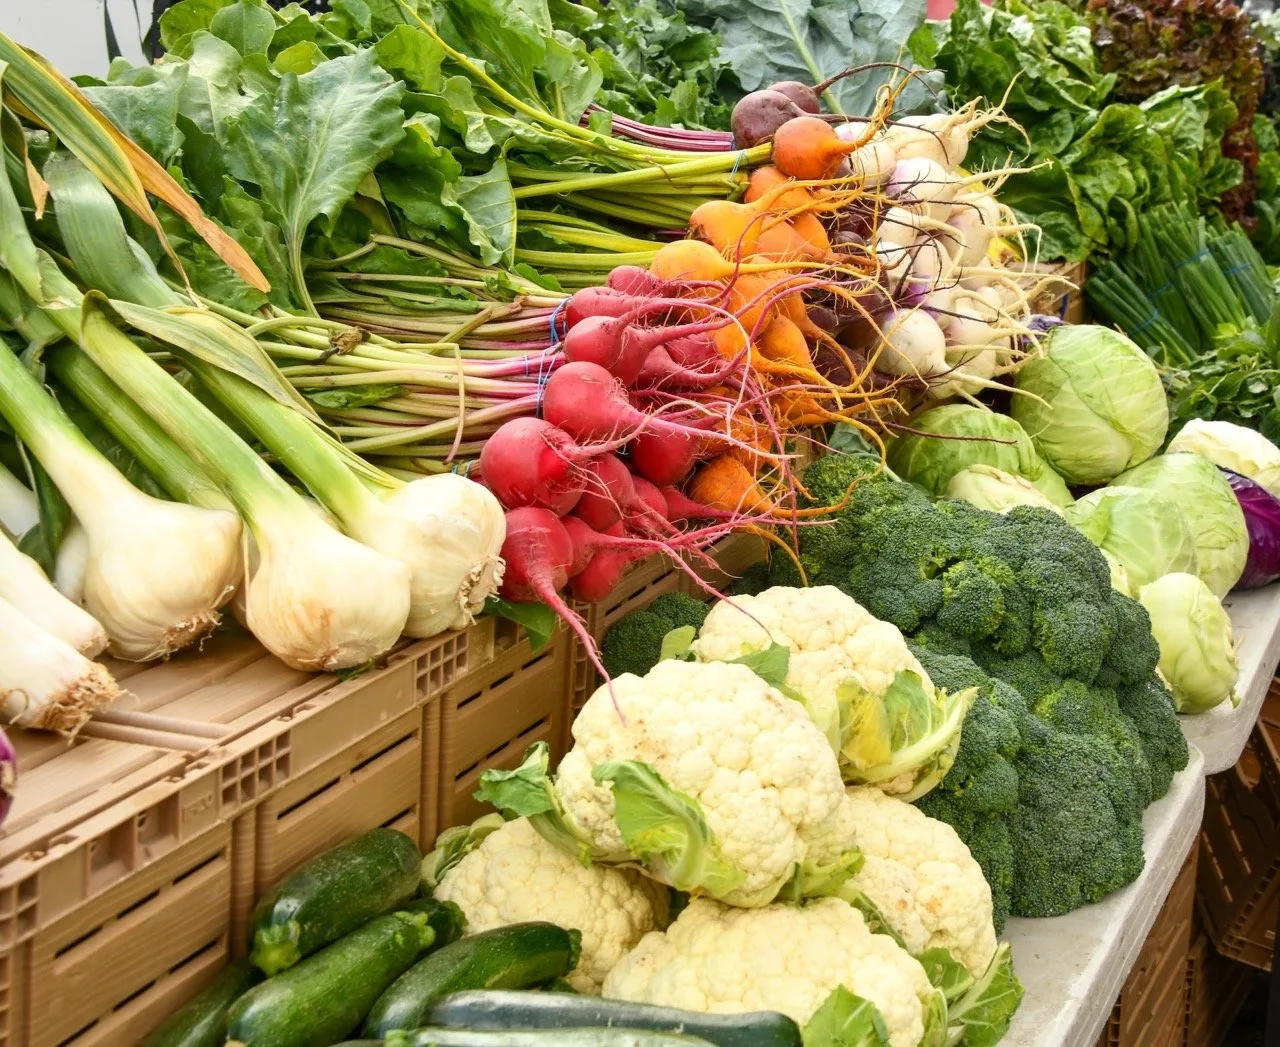 Fresh veggies at a Farmers' Market